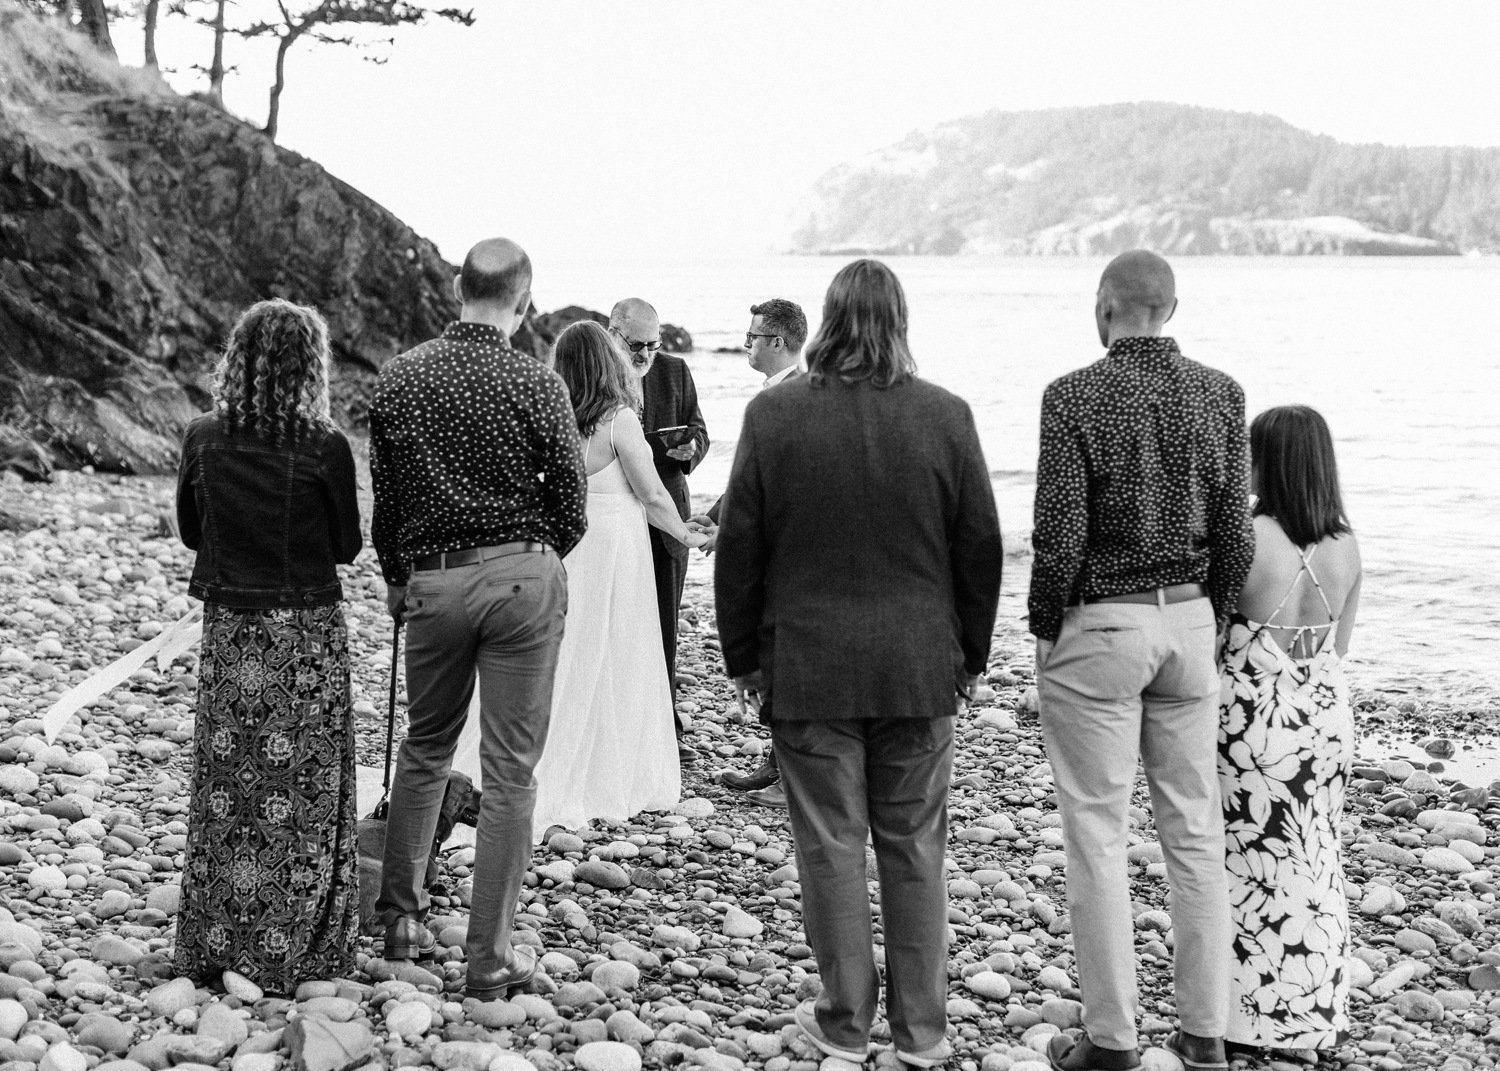 deception_pass_elopement_beach_wedding_09.jpg